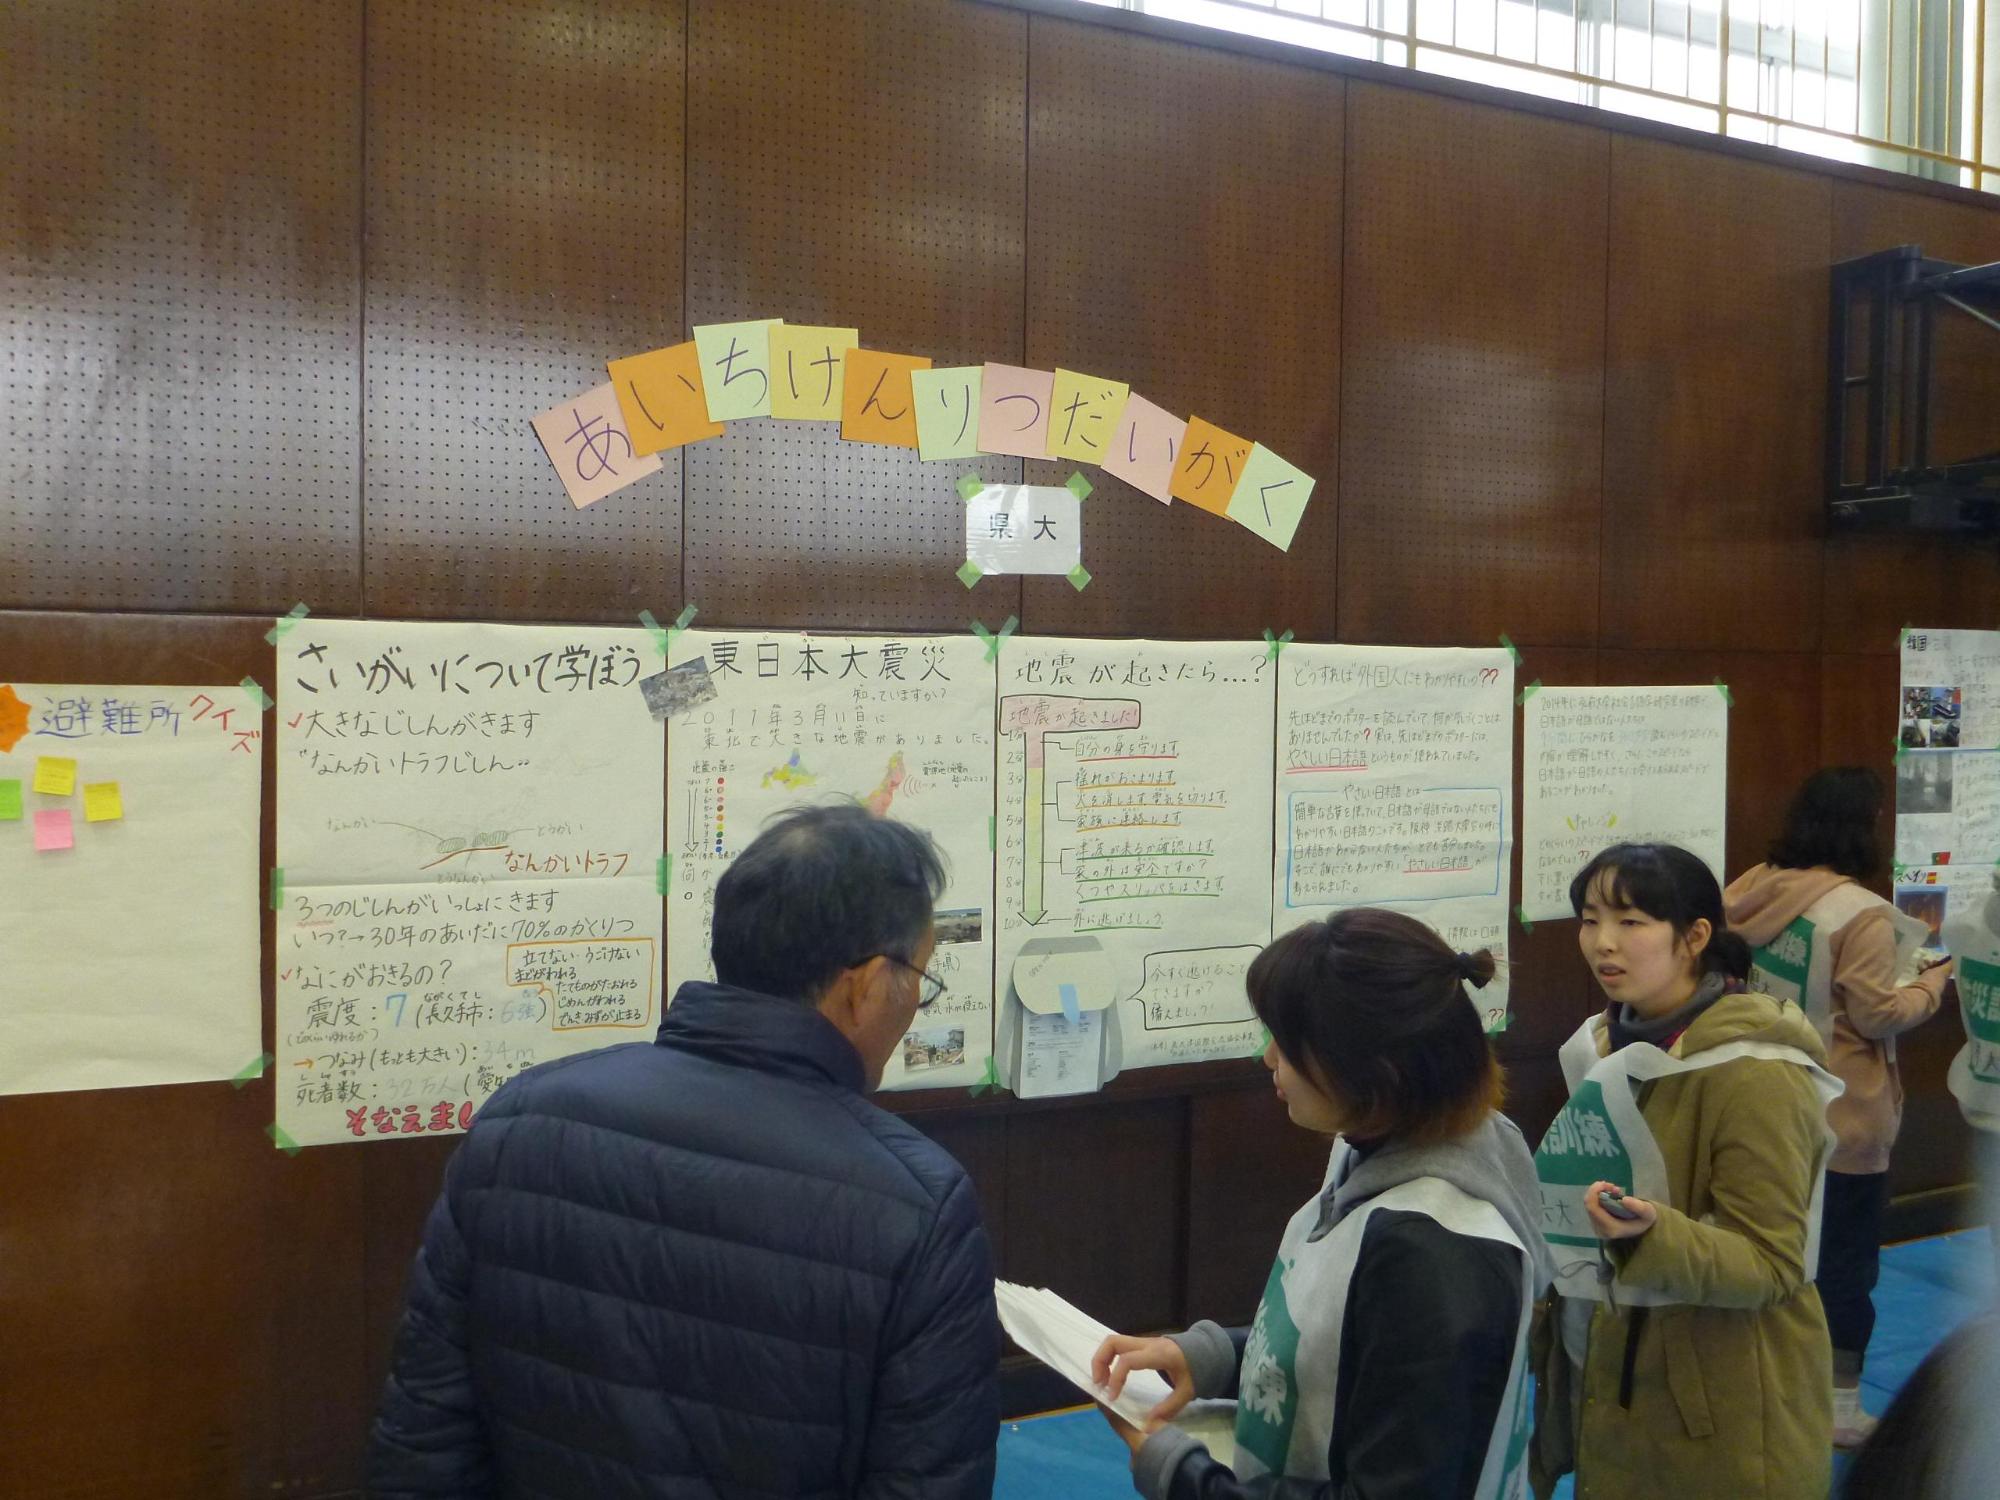 体育館の壁に避難所に関する資料がの掲示されており、参加者たちが話をしながら見学している写真